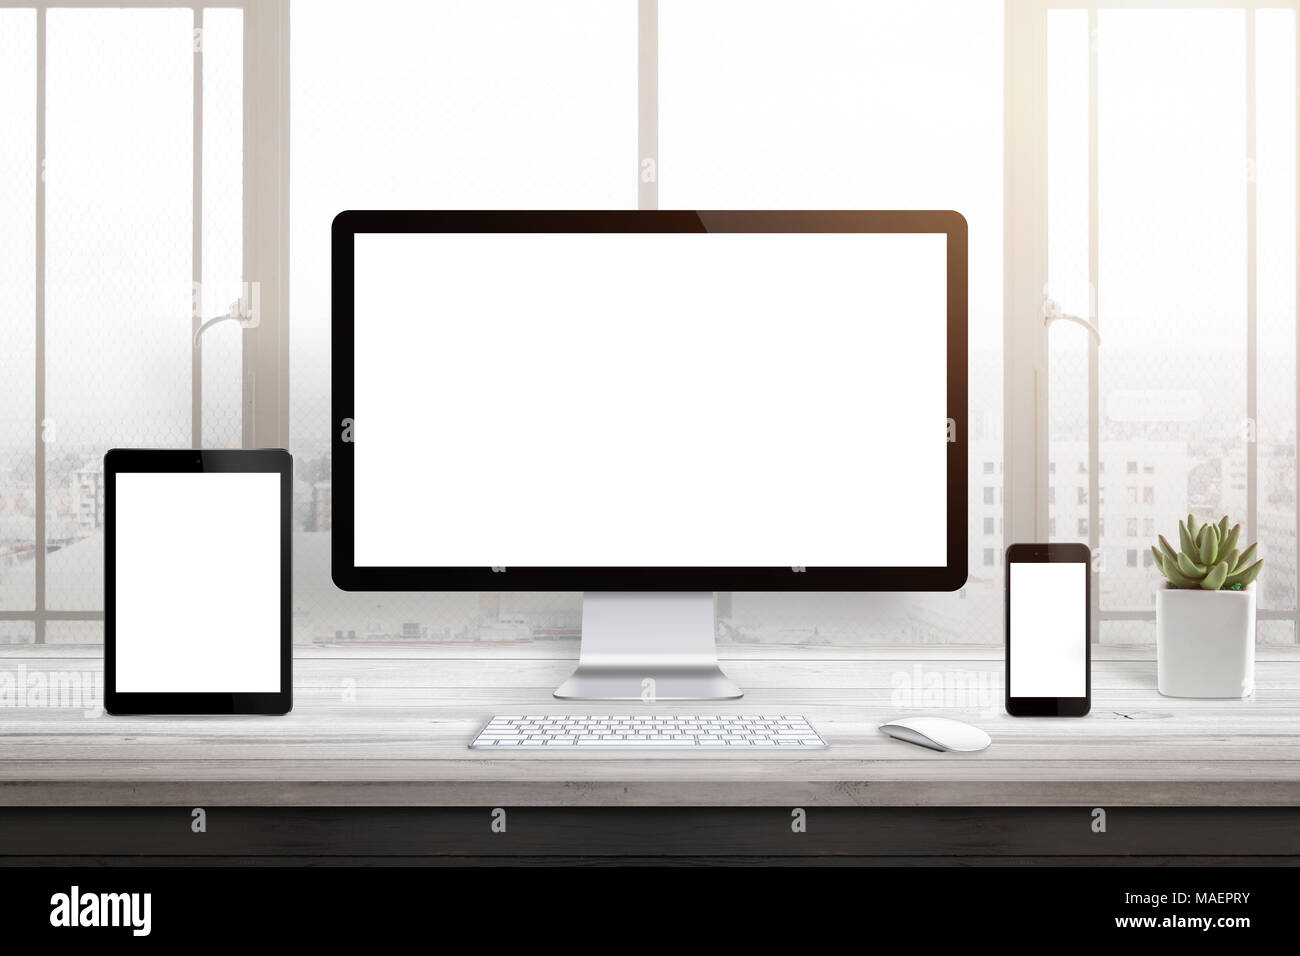 Reattivo di promozione di web site. Isolato calcolatore vergine, tablet e smart phone display. Finestra e luce solare in background. Foto Stock